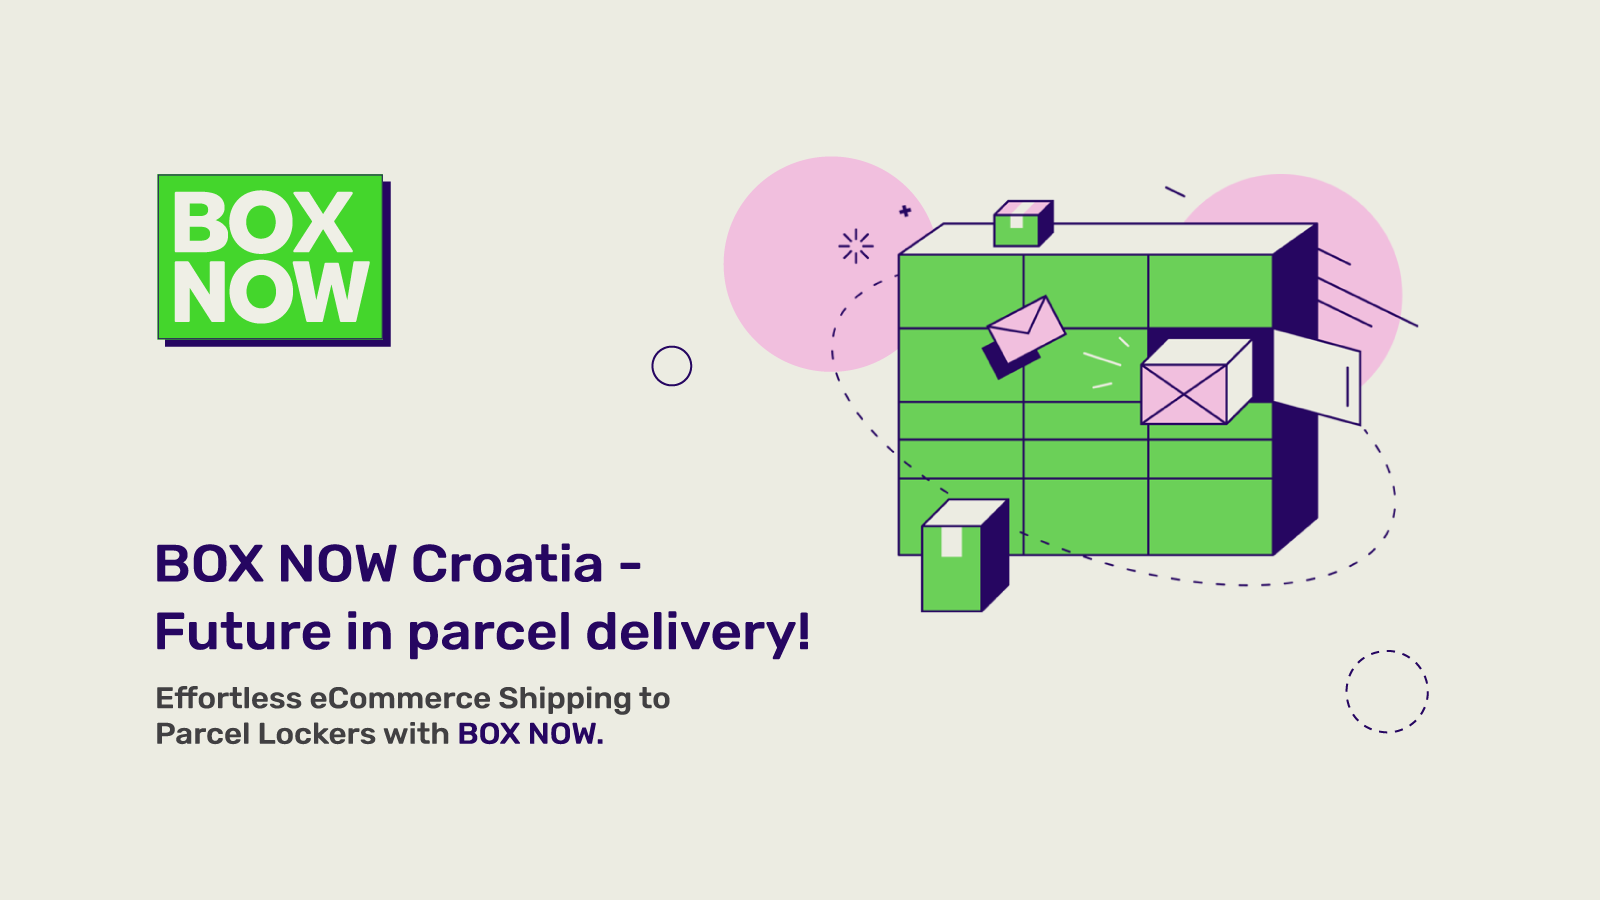 BOX NOW Croatia - O futuro na entrega de encomendas!